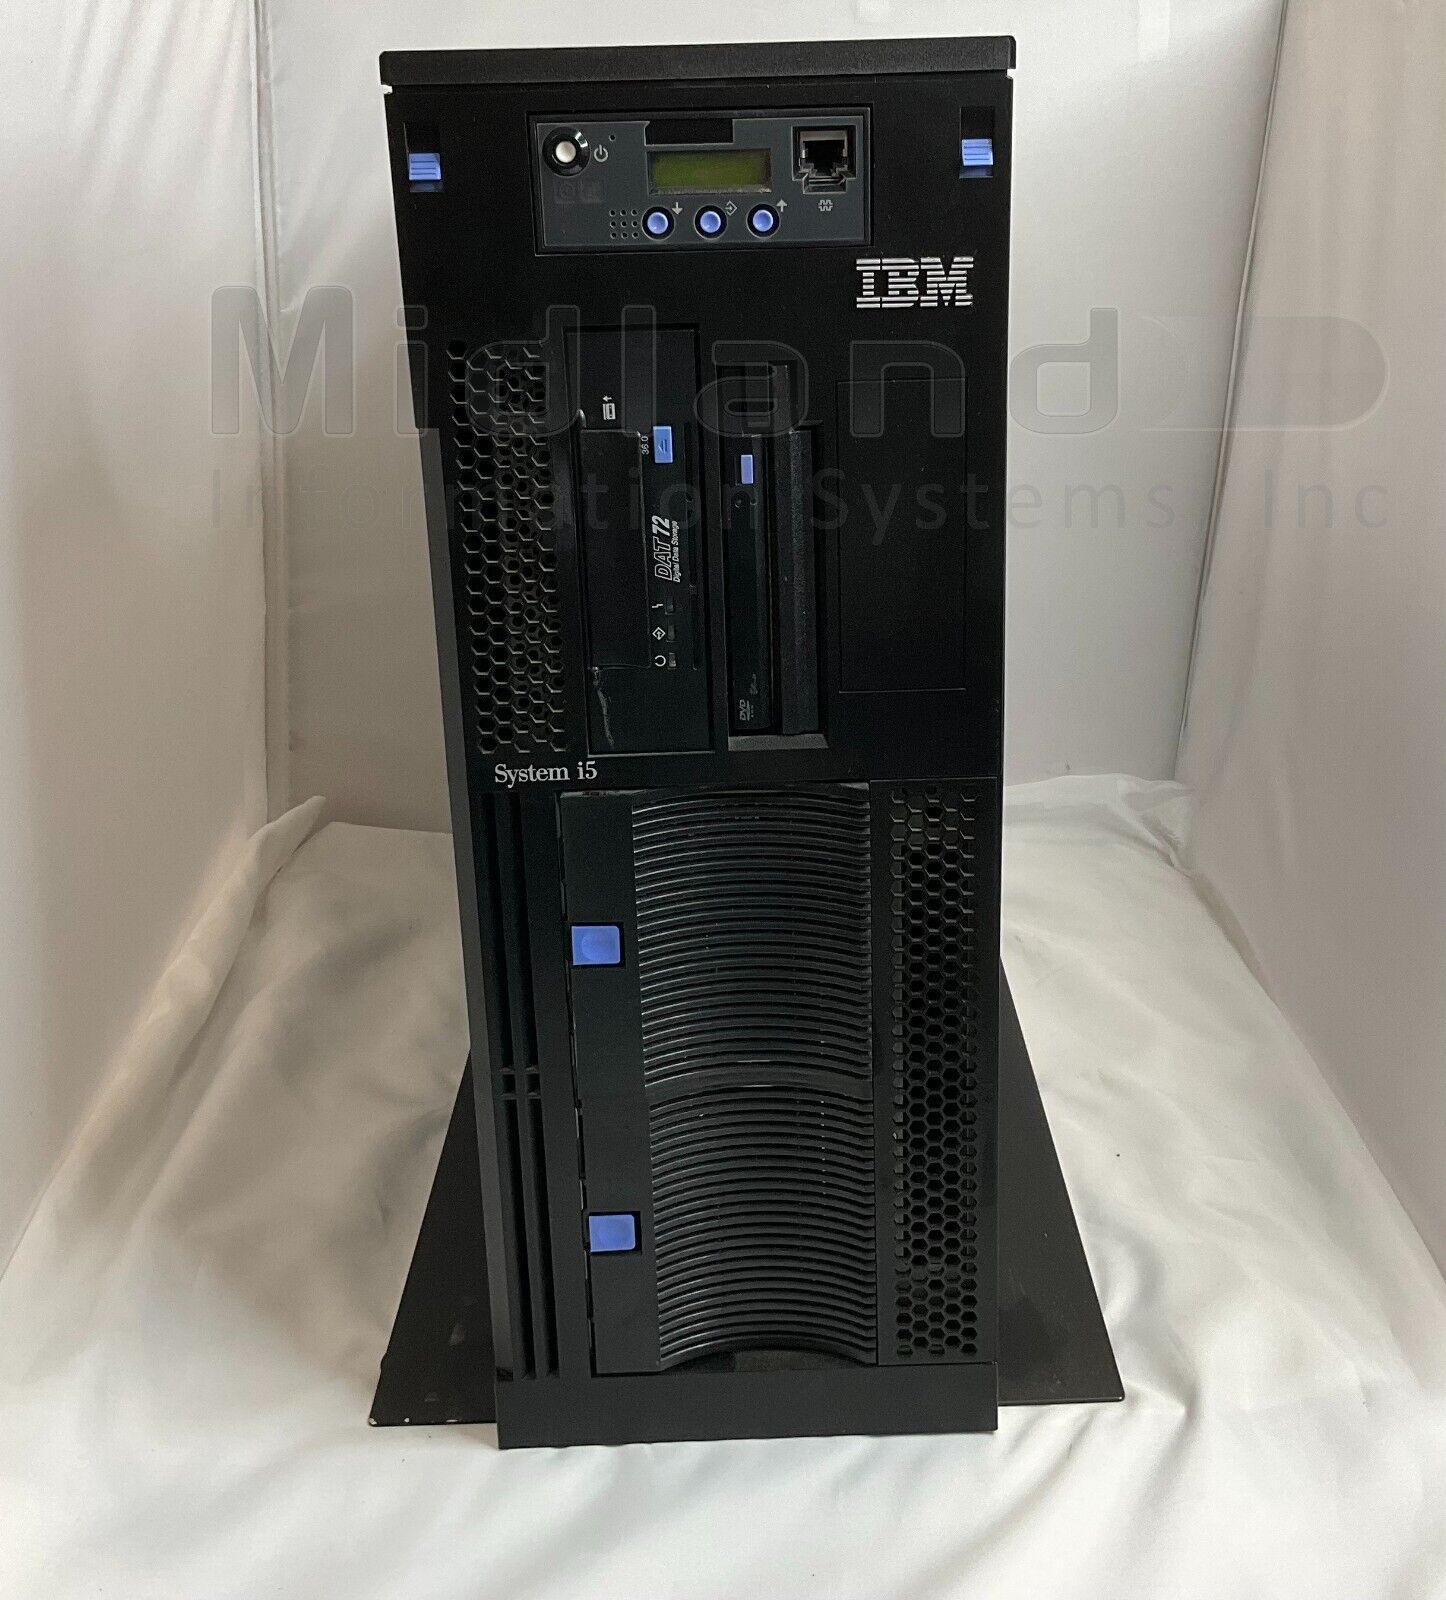 IBM 9406-520 Deskside Server 0901-7414 with OS V6R1 license.